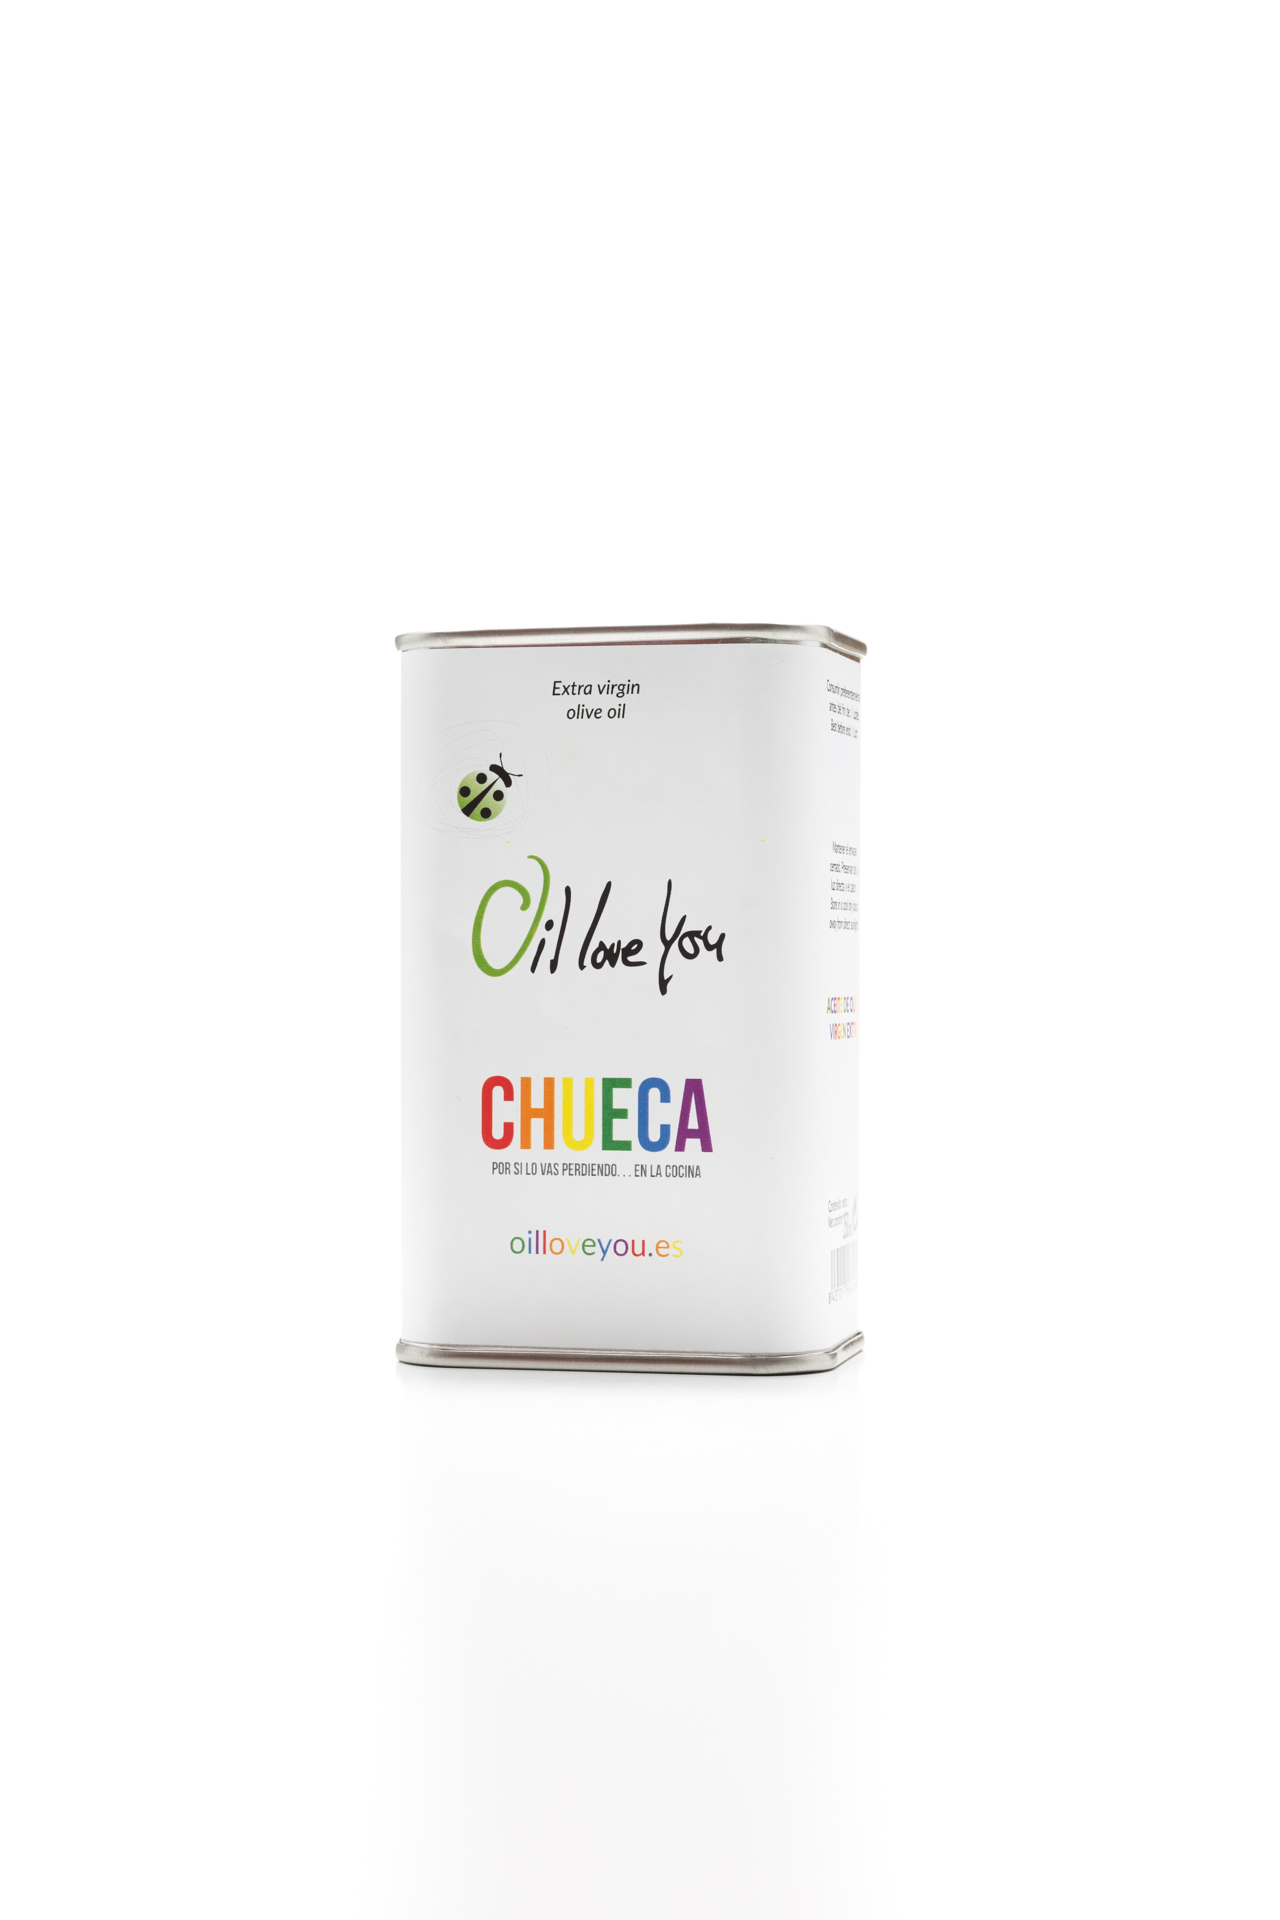 lata-de-aceite-de-oliva-virgen-extra-250ml--EDICIÓN-CHUECA-oilloveyou (3)